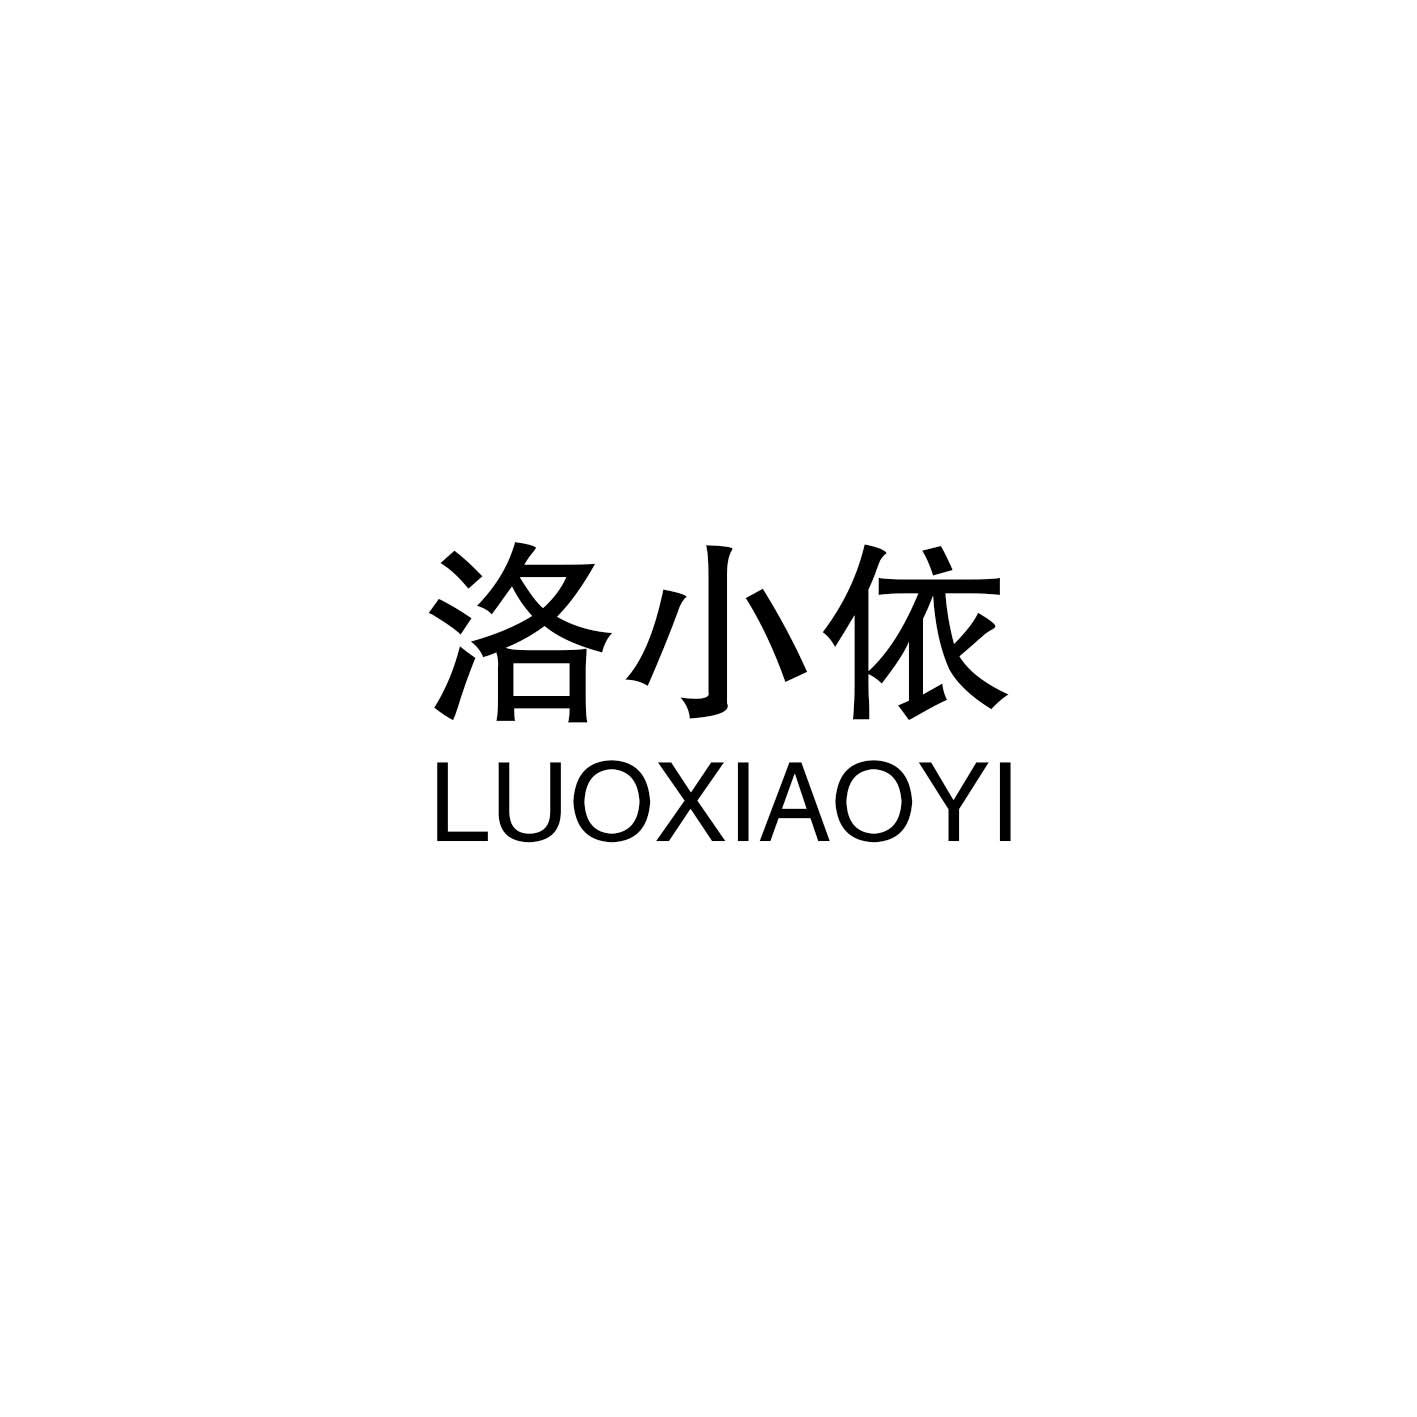 洛小依
LUOXIAOYI